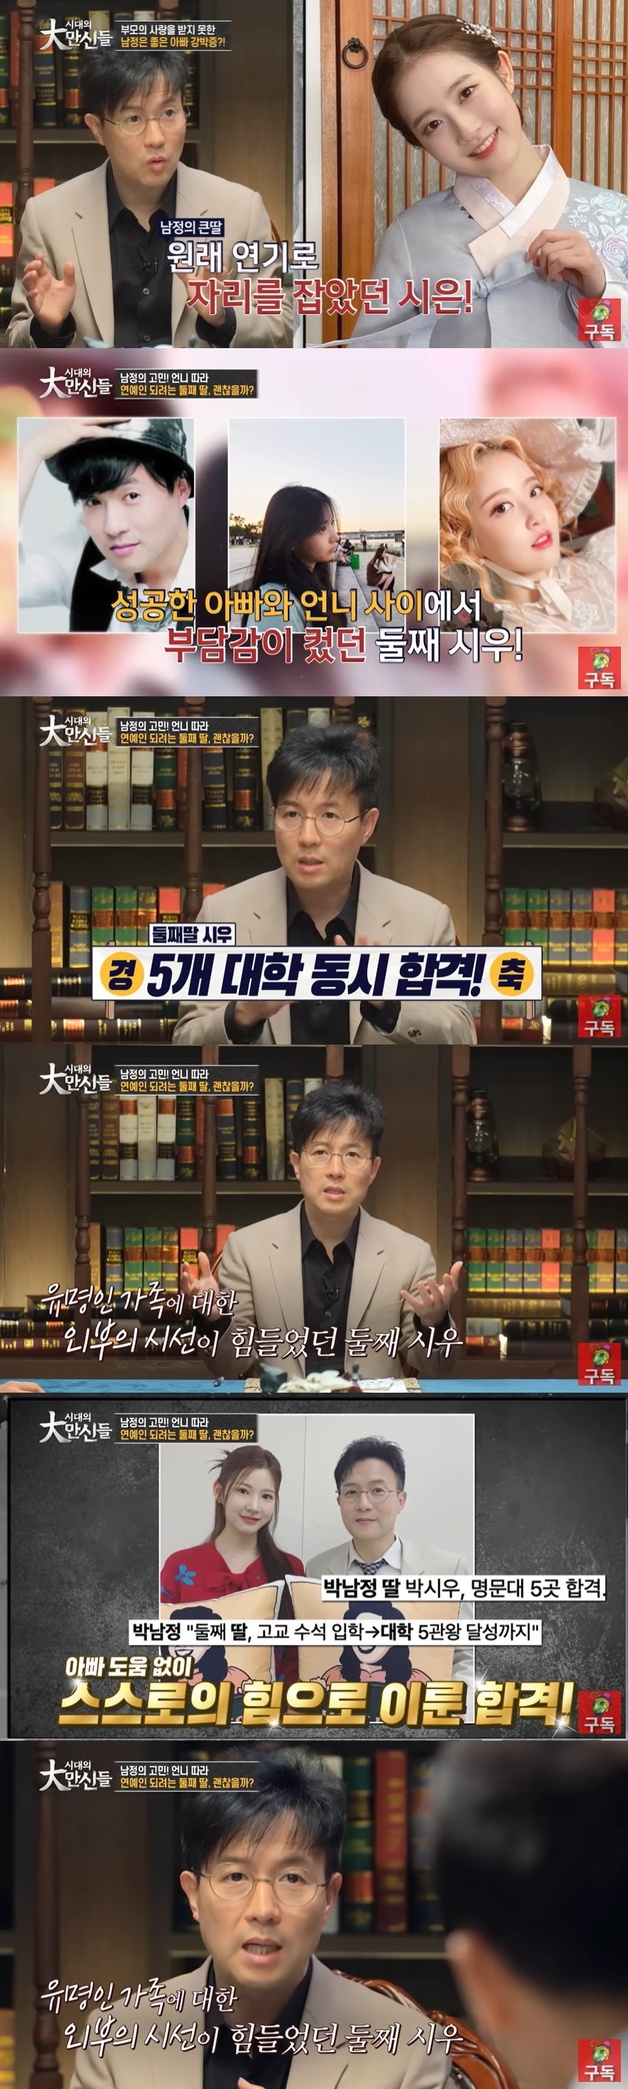 박남정 "대입 5관왕한 둘째 딸, 언니 따라 연예계 활동 희망"